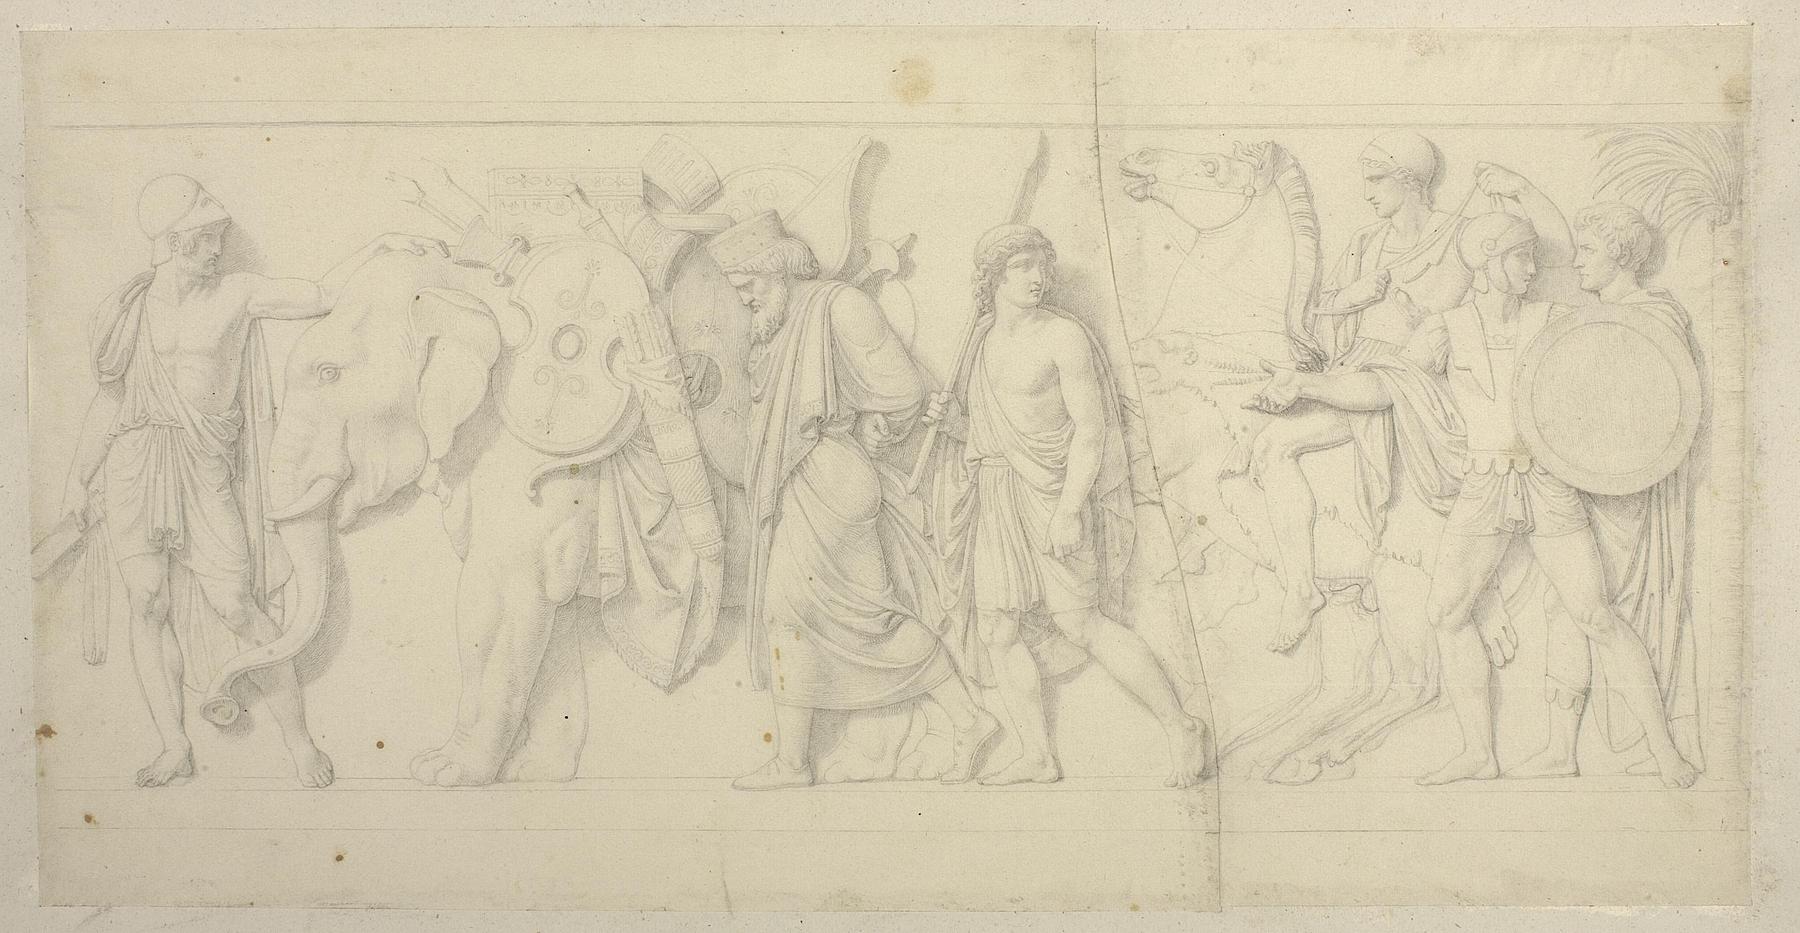 Ung græsk kriger viser Thorvaldsen elefanten som passererer med persiske våben og det kosteligste skrin, D22